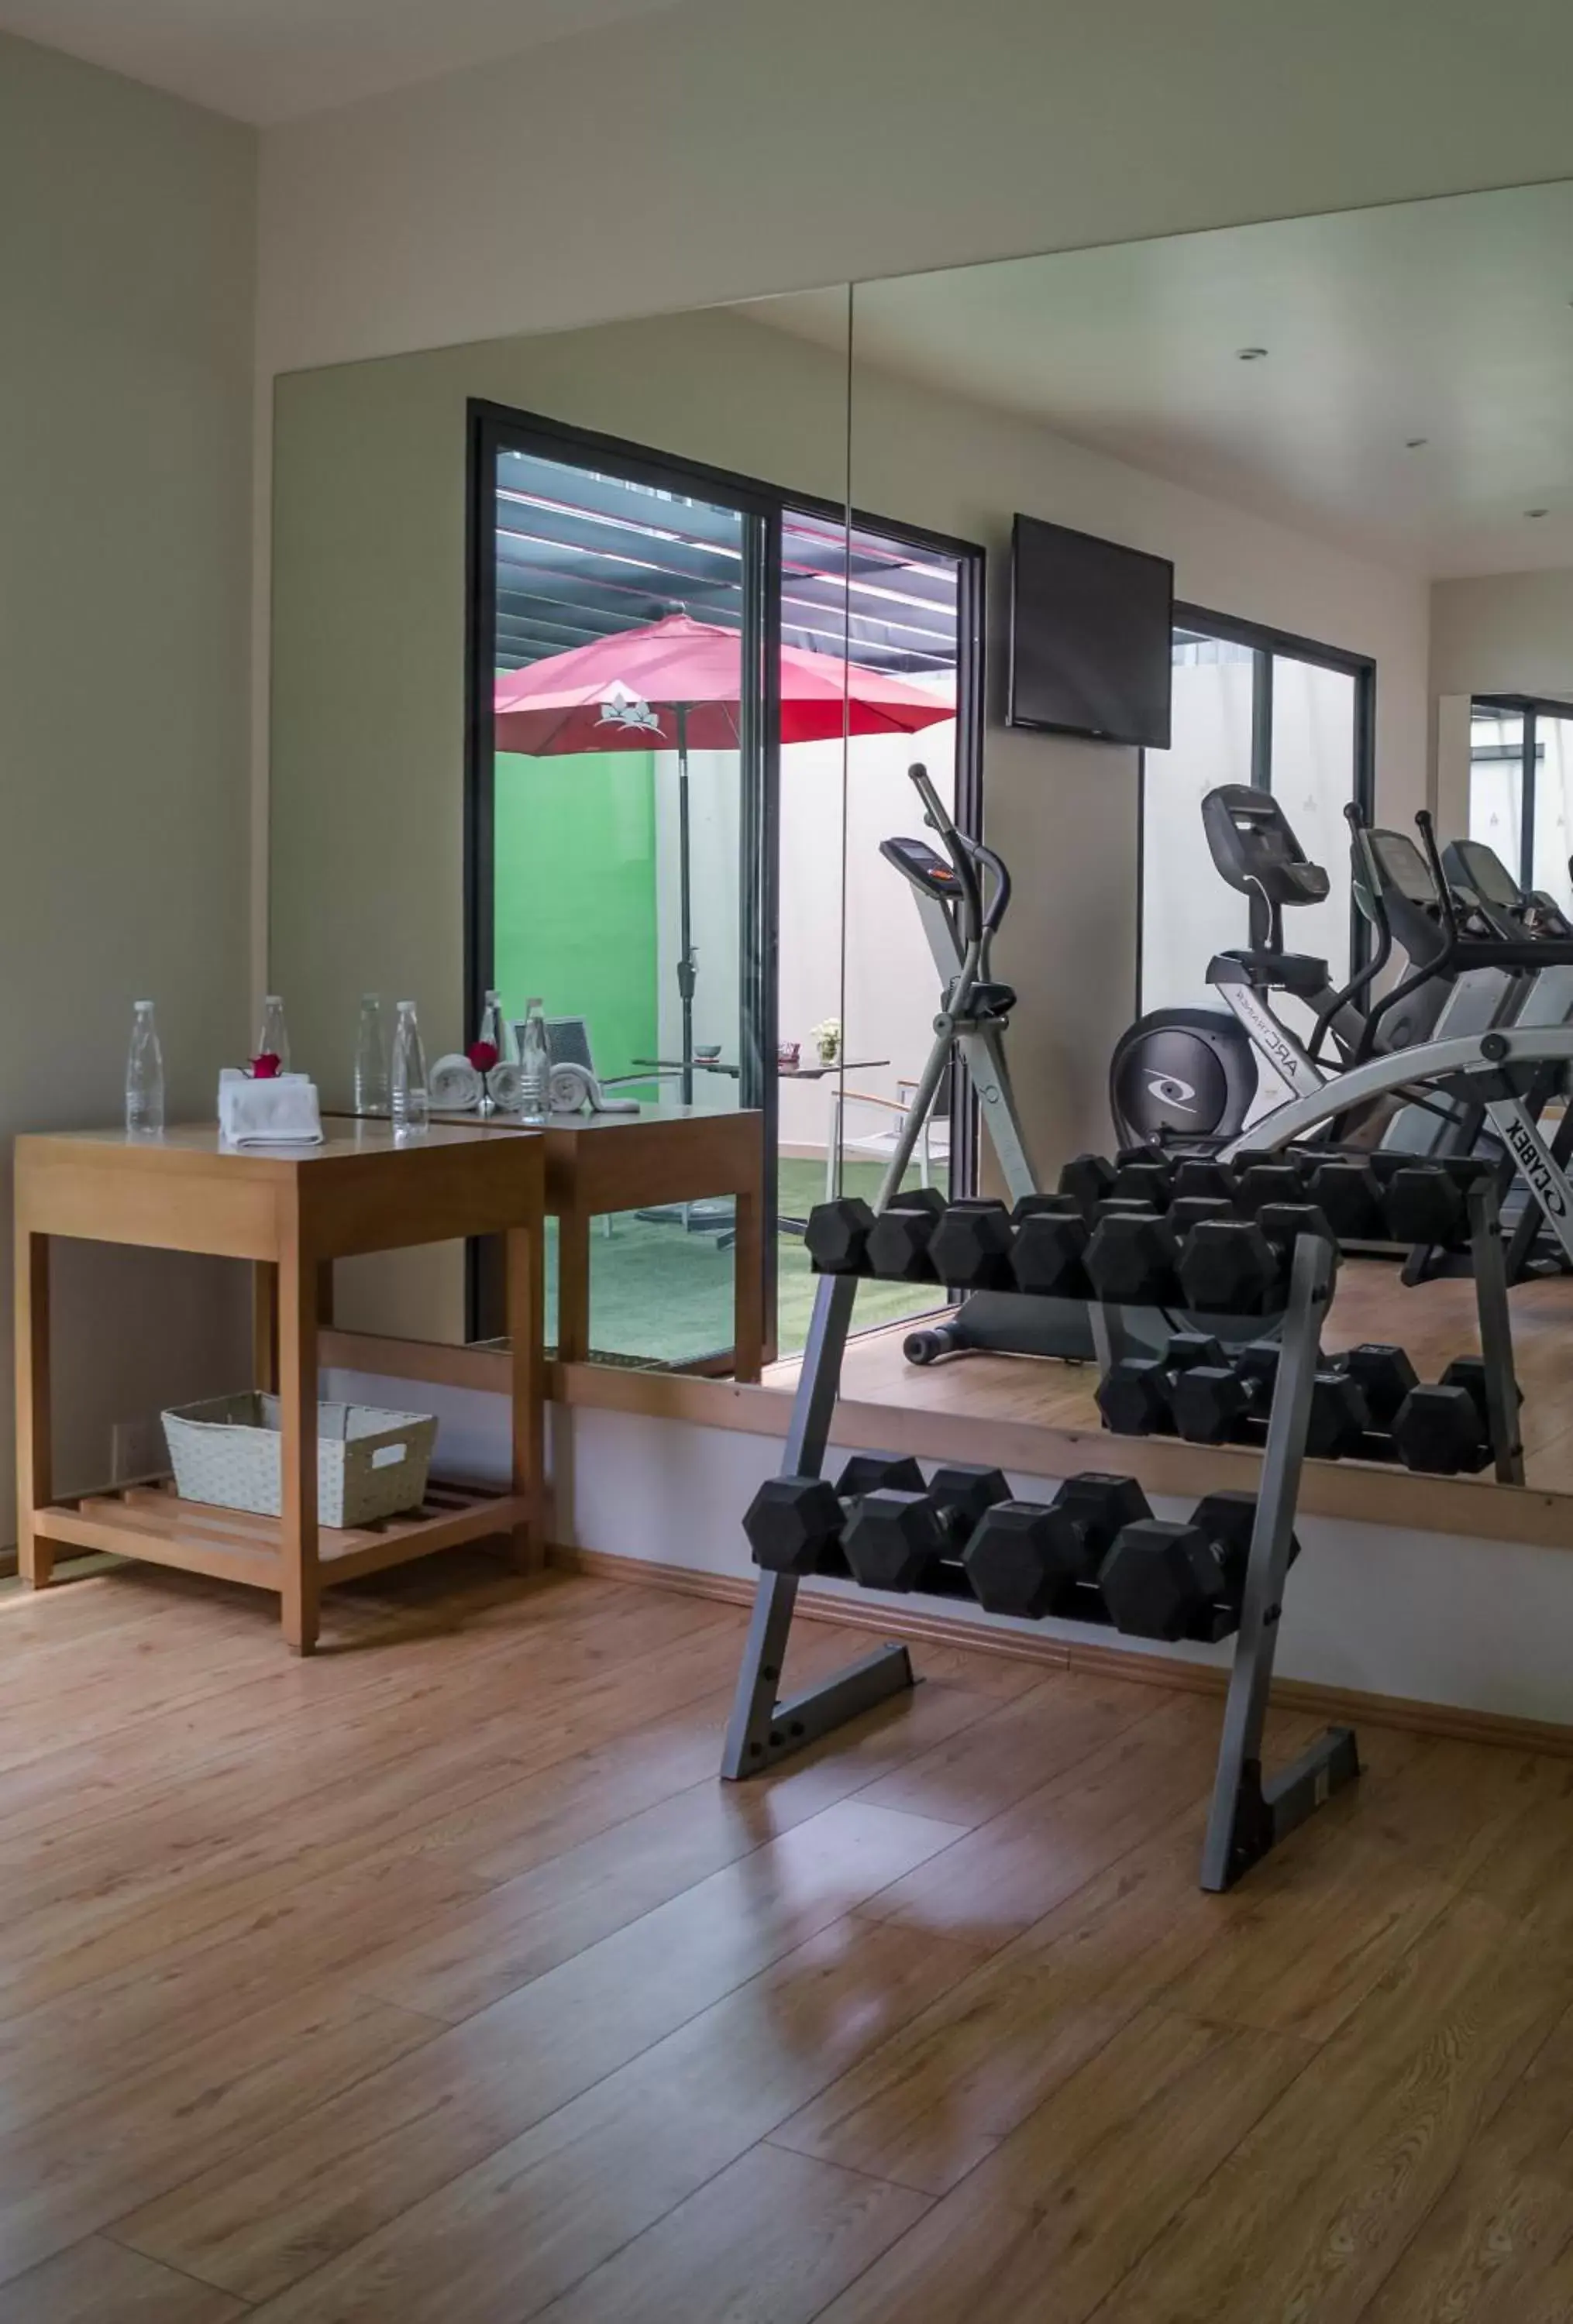 Fitness centre/facilities, Fitness Center/Facilities in Alteza Polanco